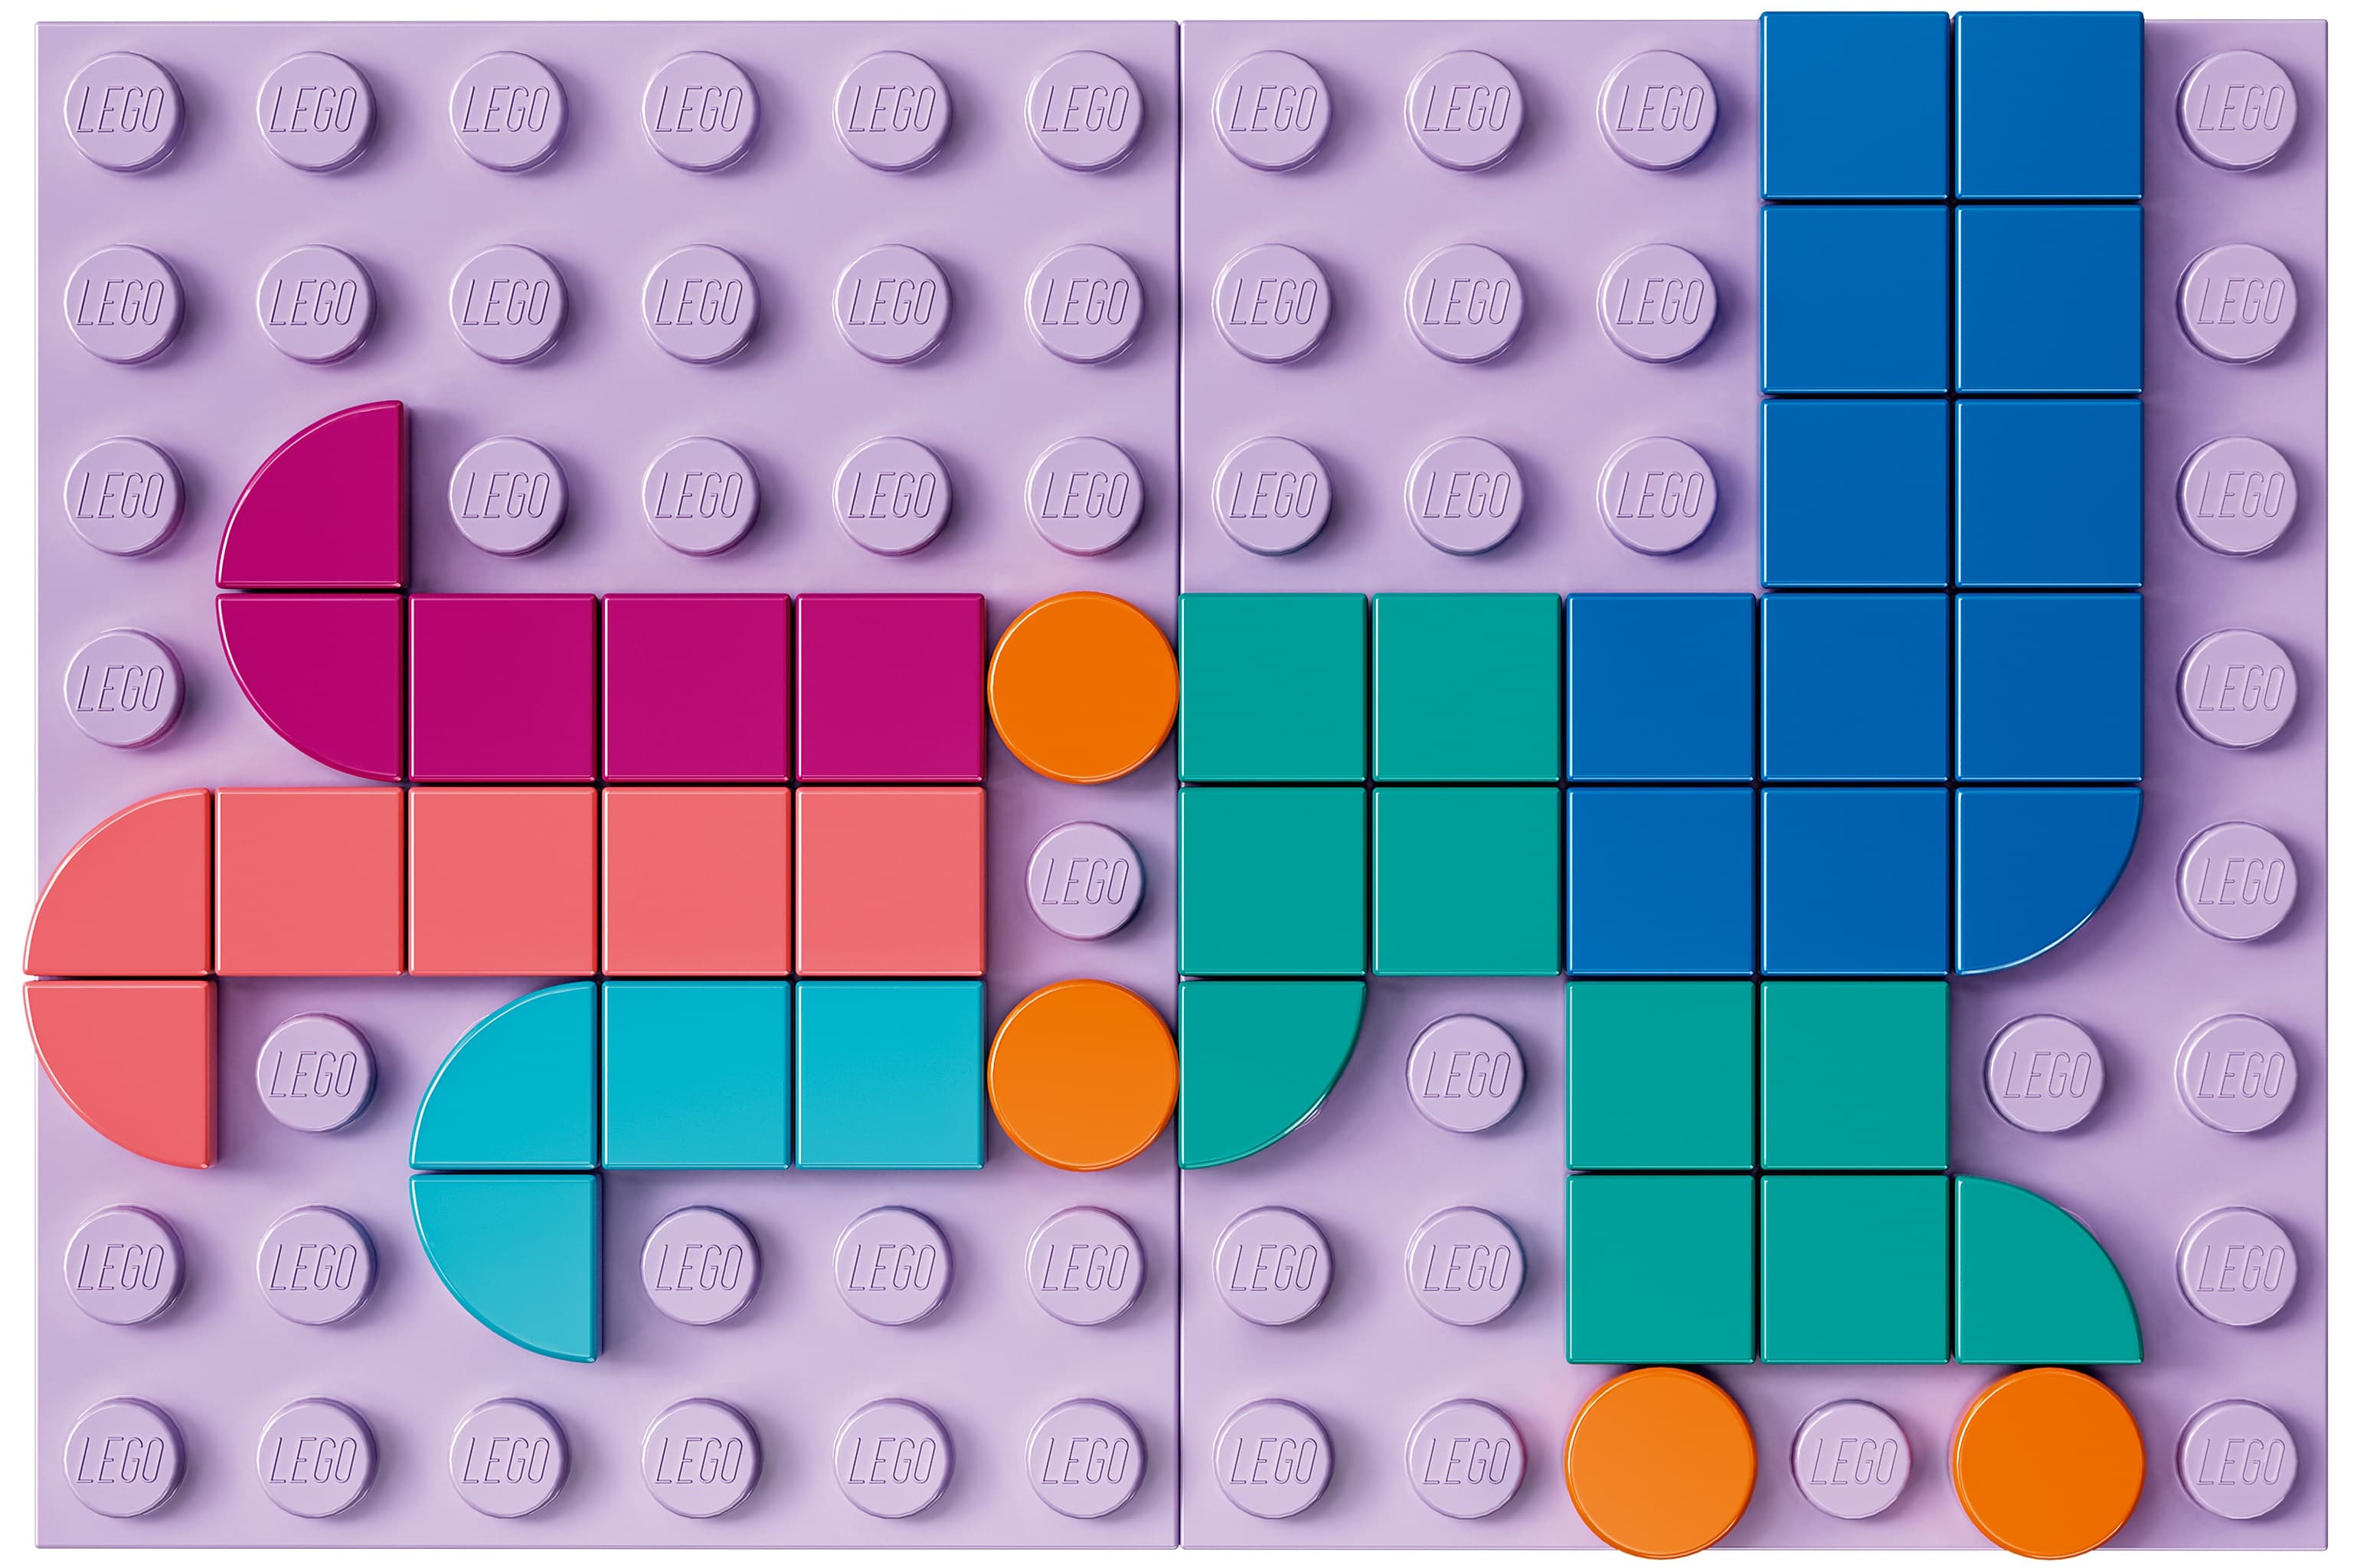 Конструктор LEGO DOTS «Большой набор тайлов» 41935 / 1040 деталей